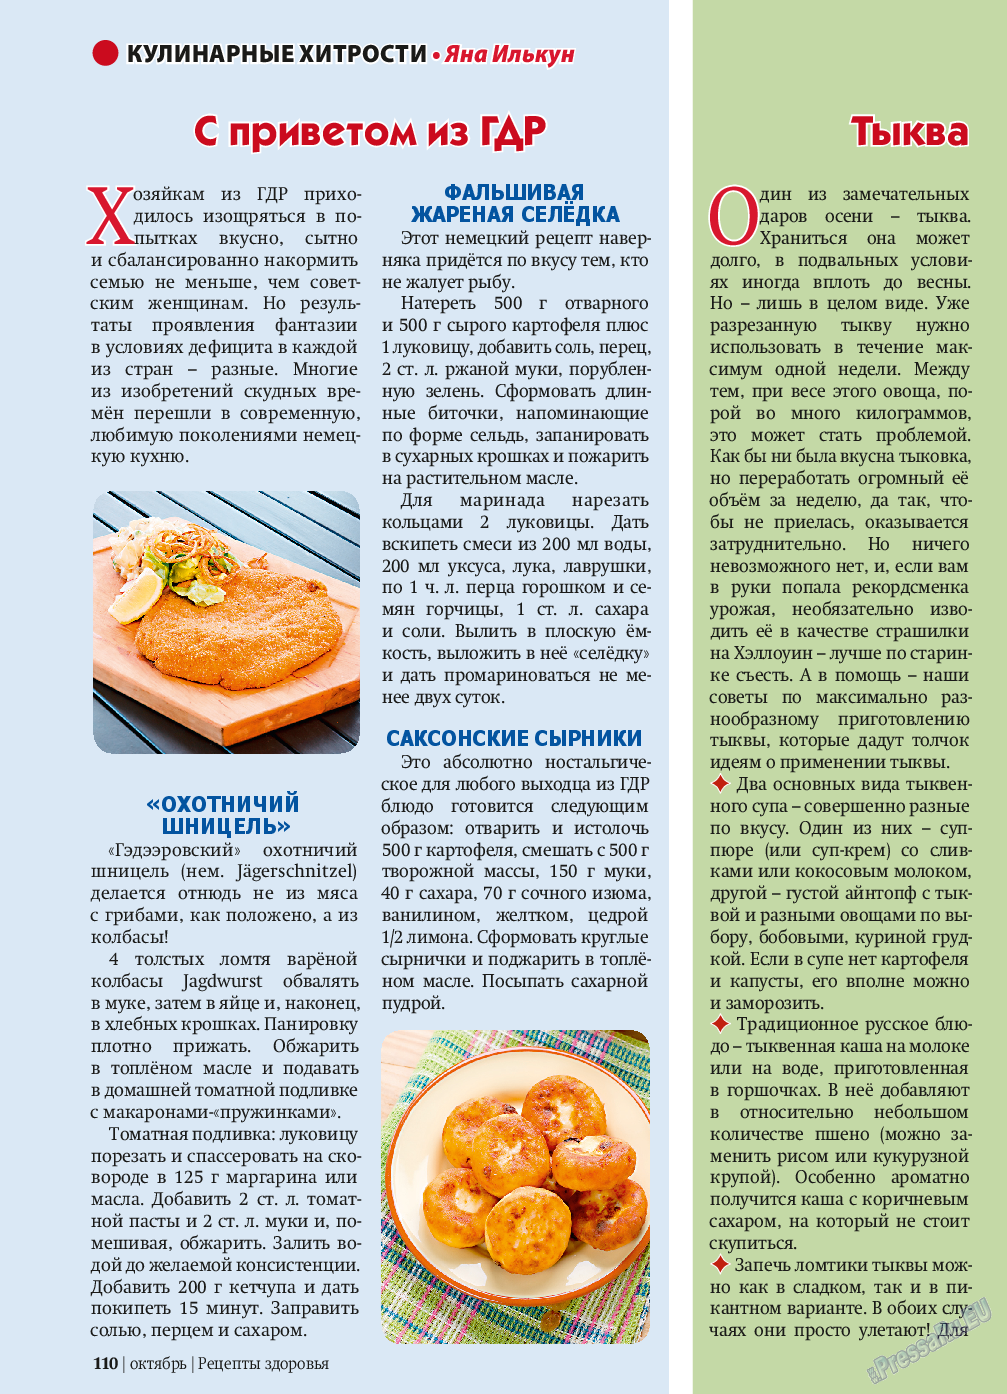 Рецепты здоровья, журнал. 2013 №10 стр.110